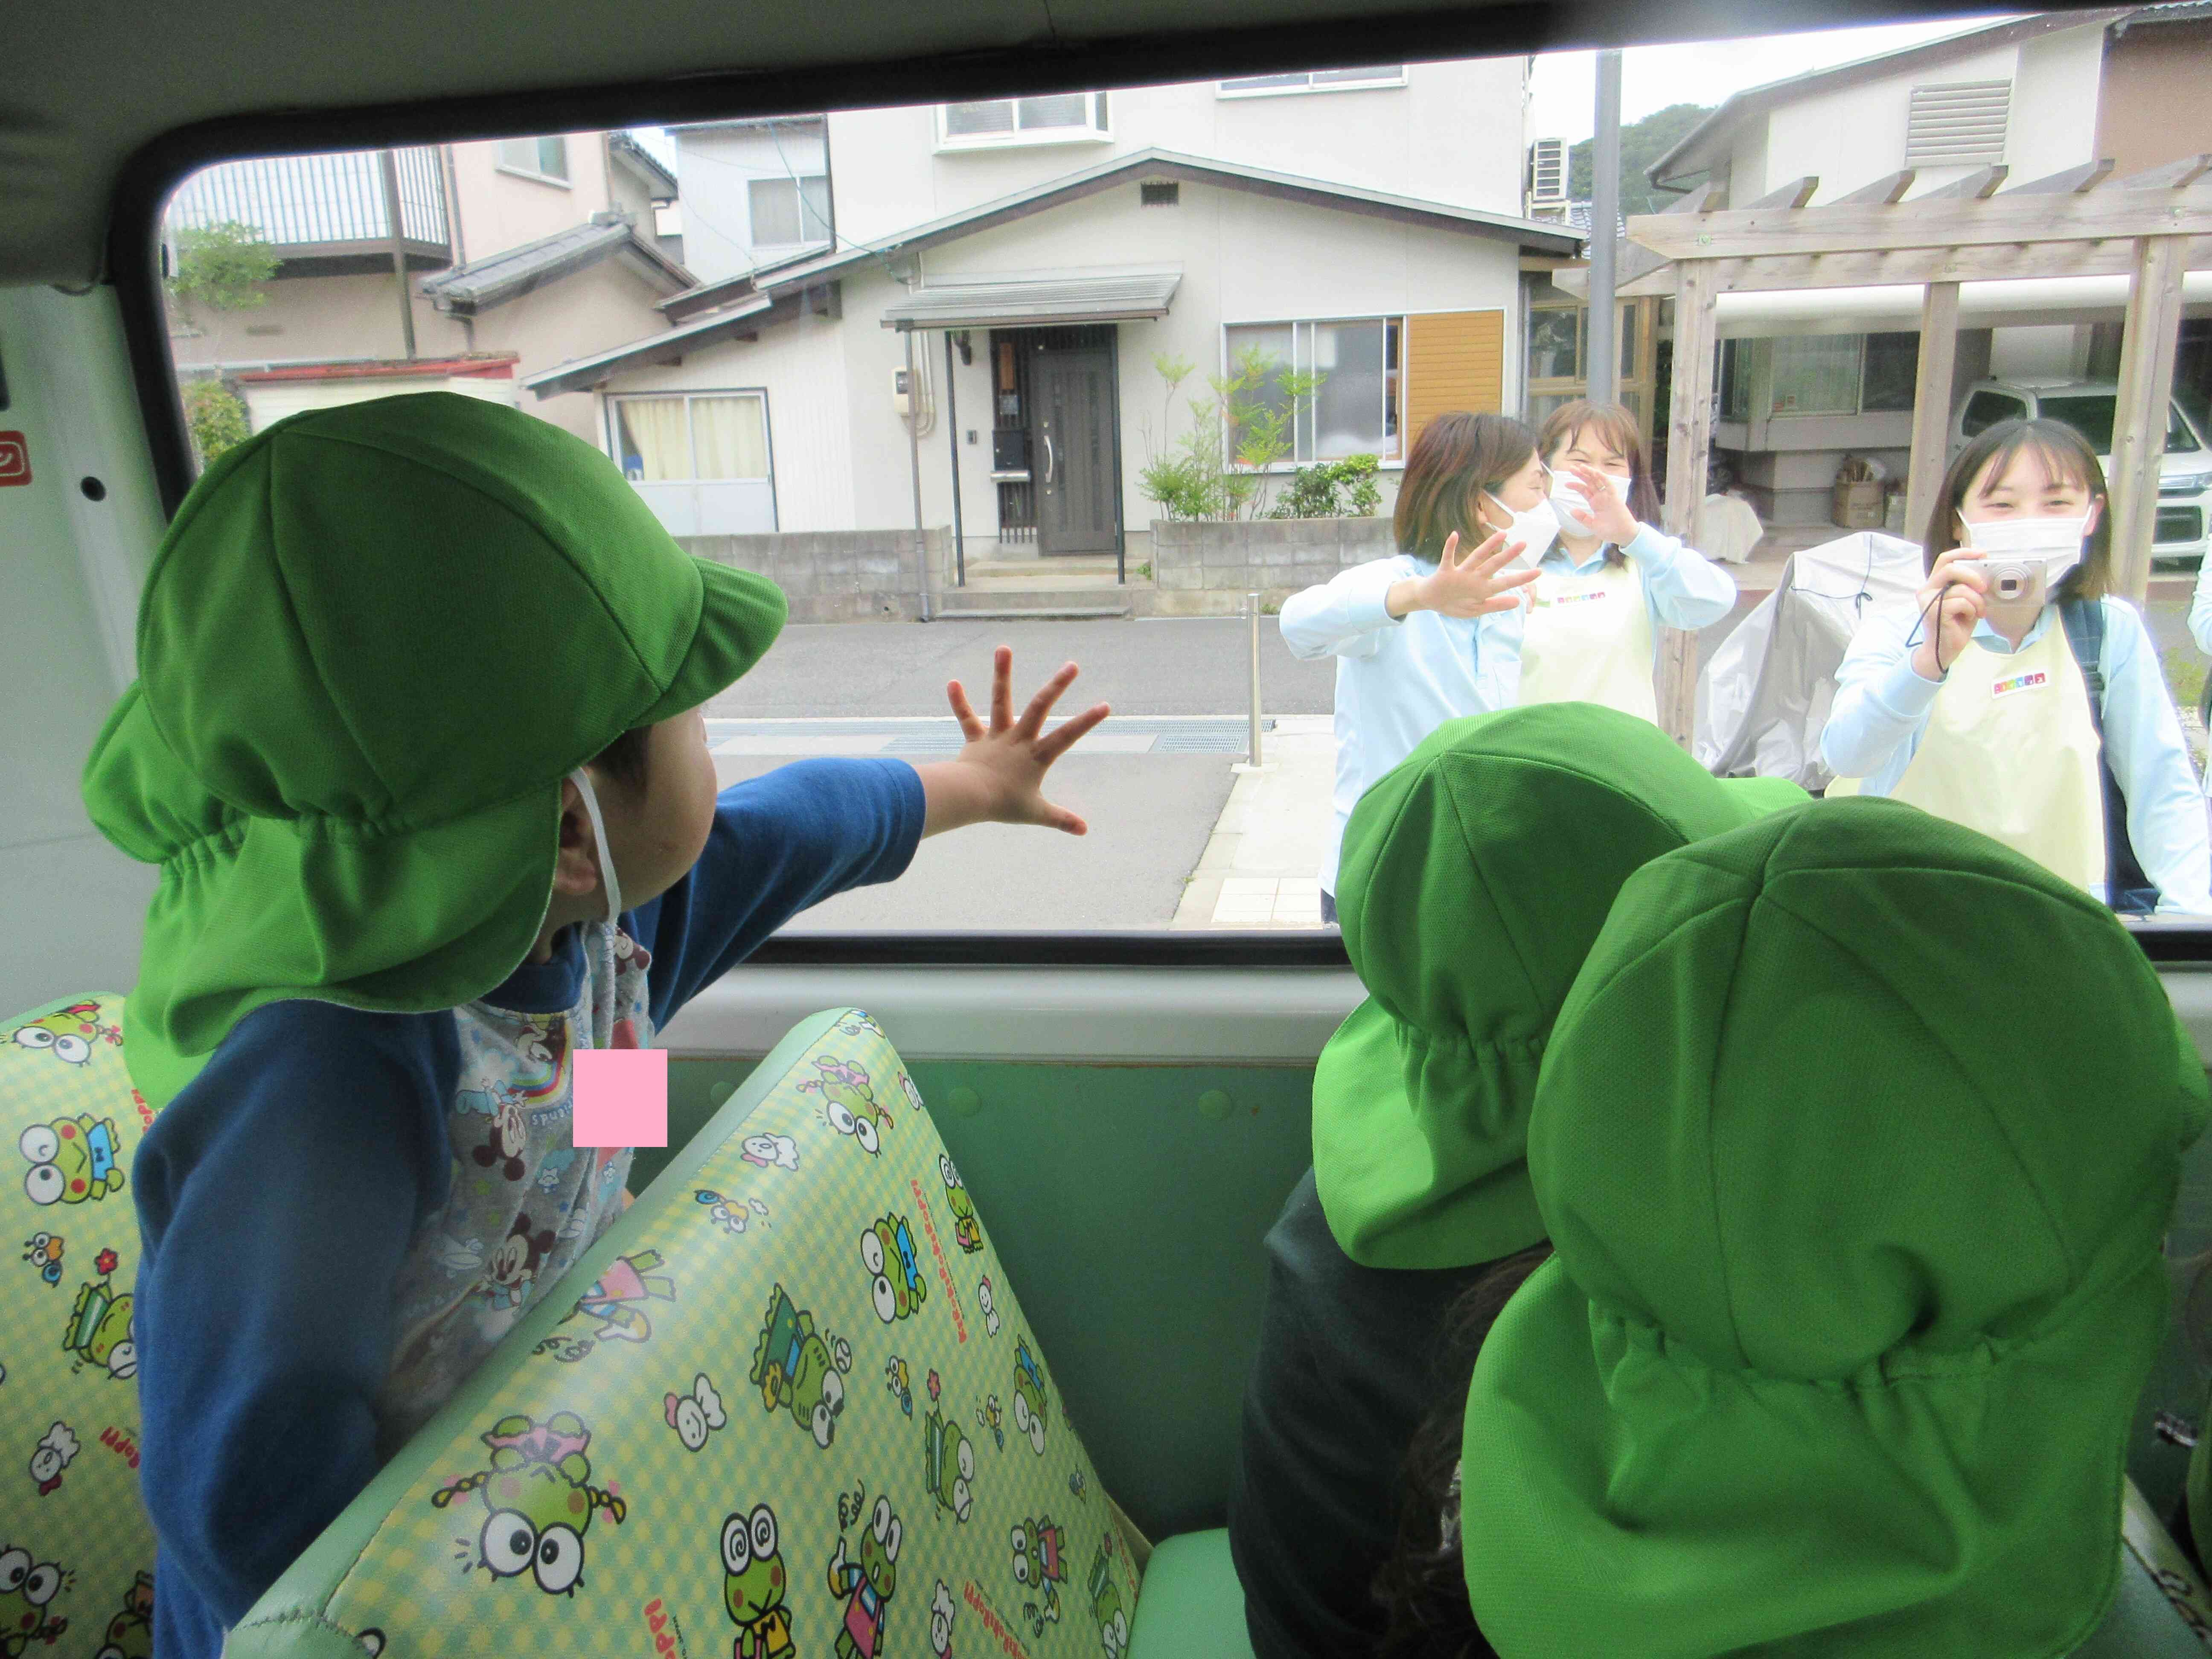 「バイバイ～」とバスの中から嬉しそうに手を振る子どもたちです